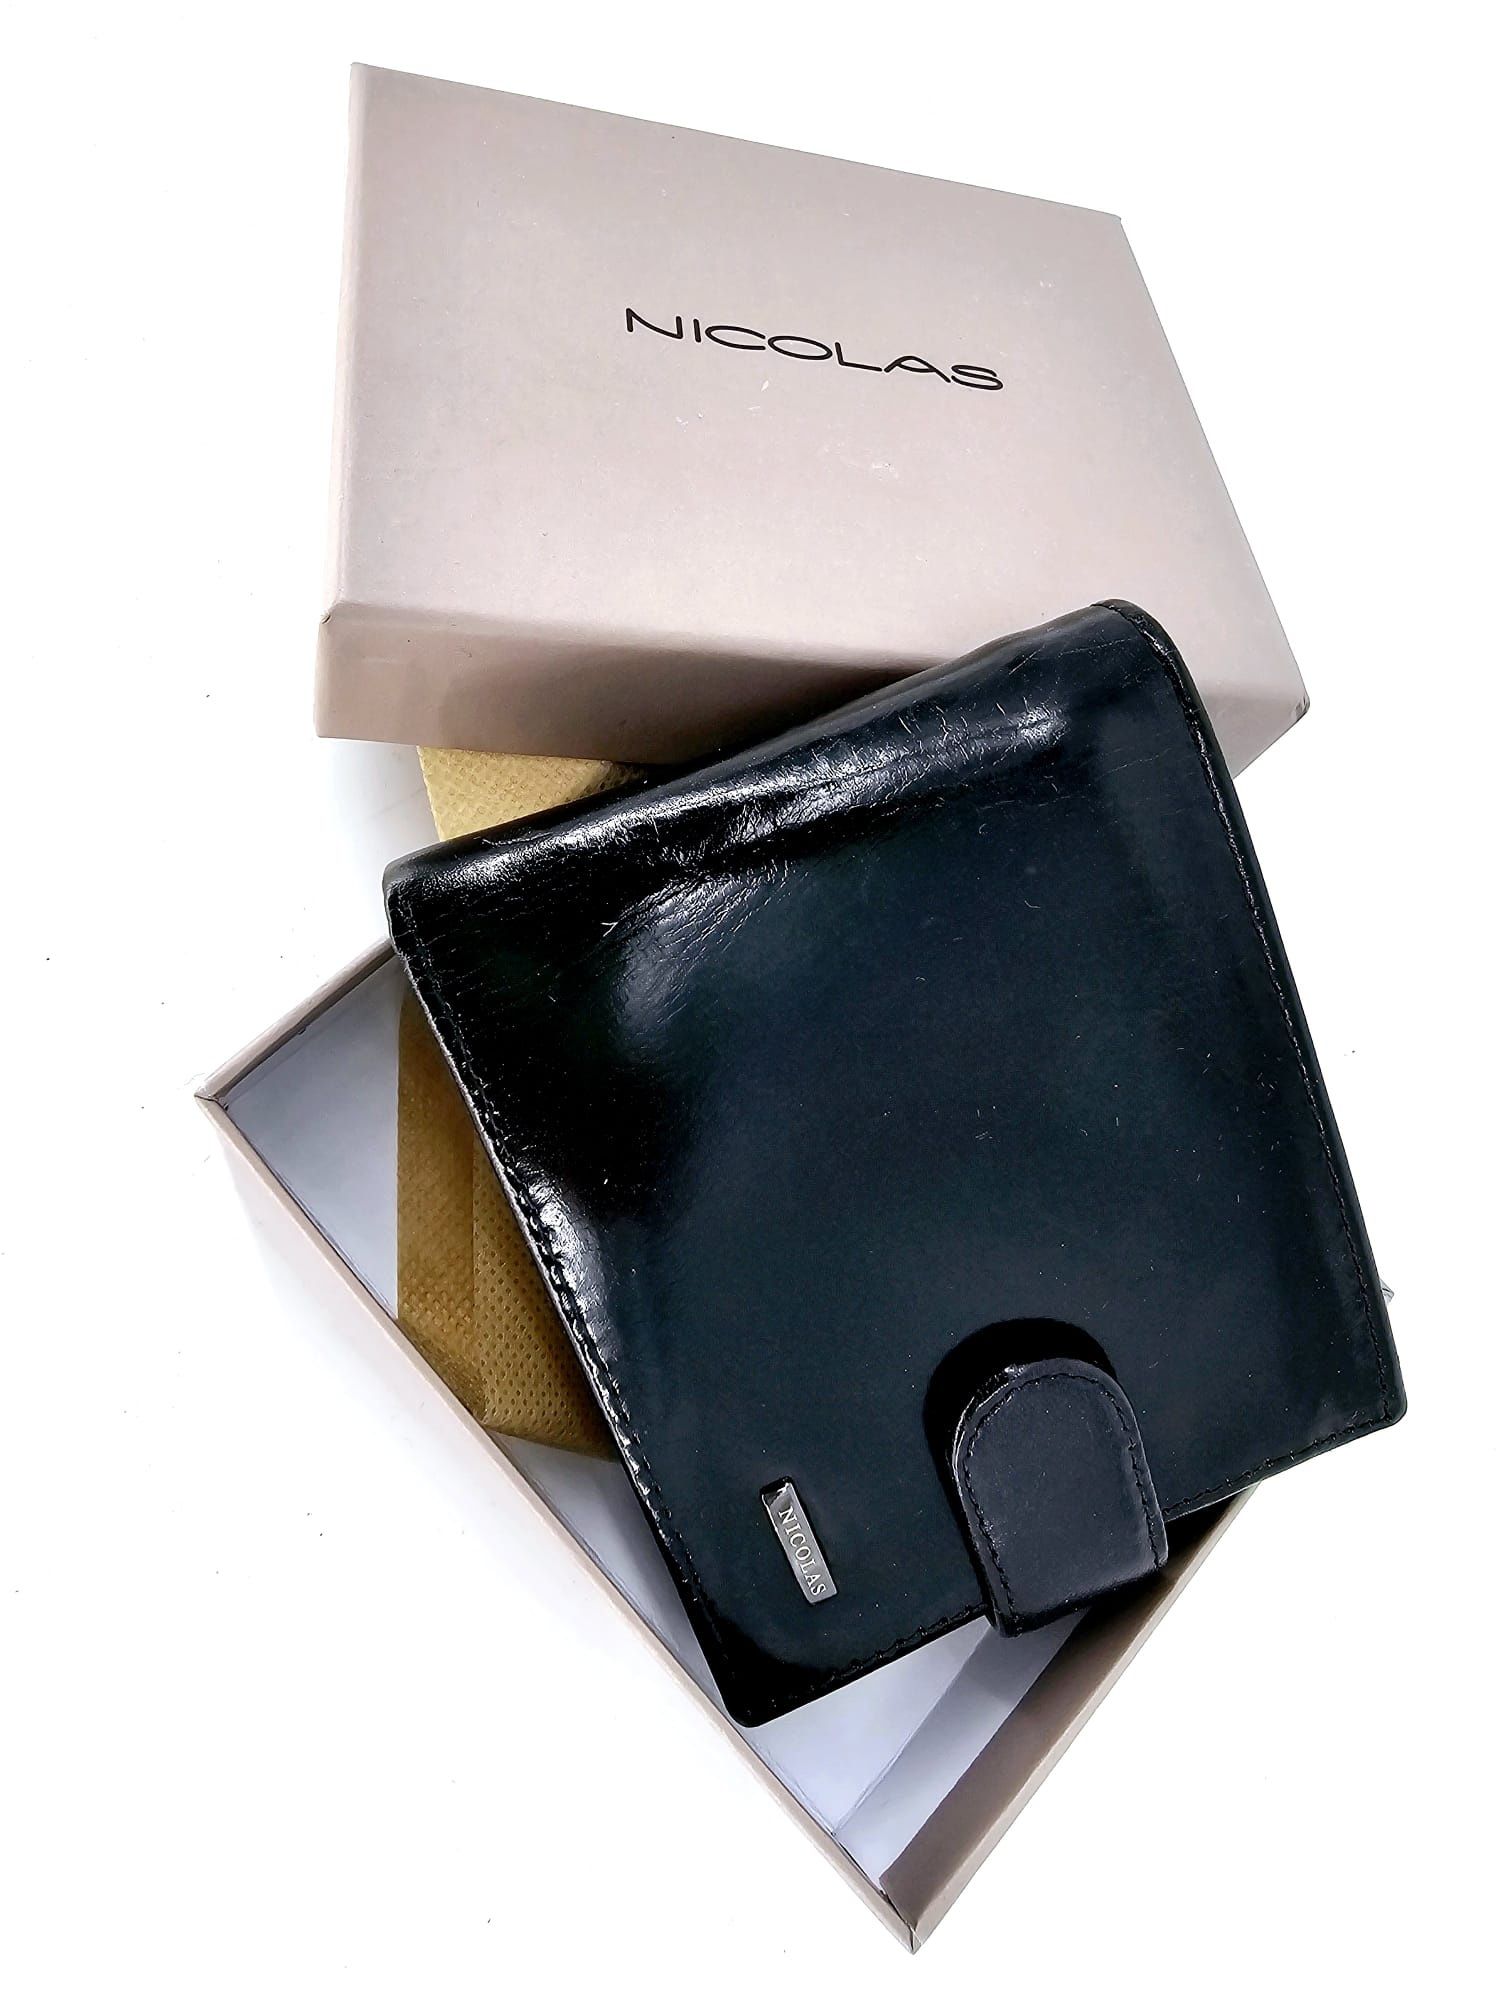 Nowy modny poziomy portfel męski skórzany marki Nicolas czarny